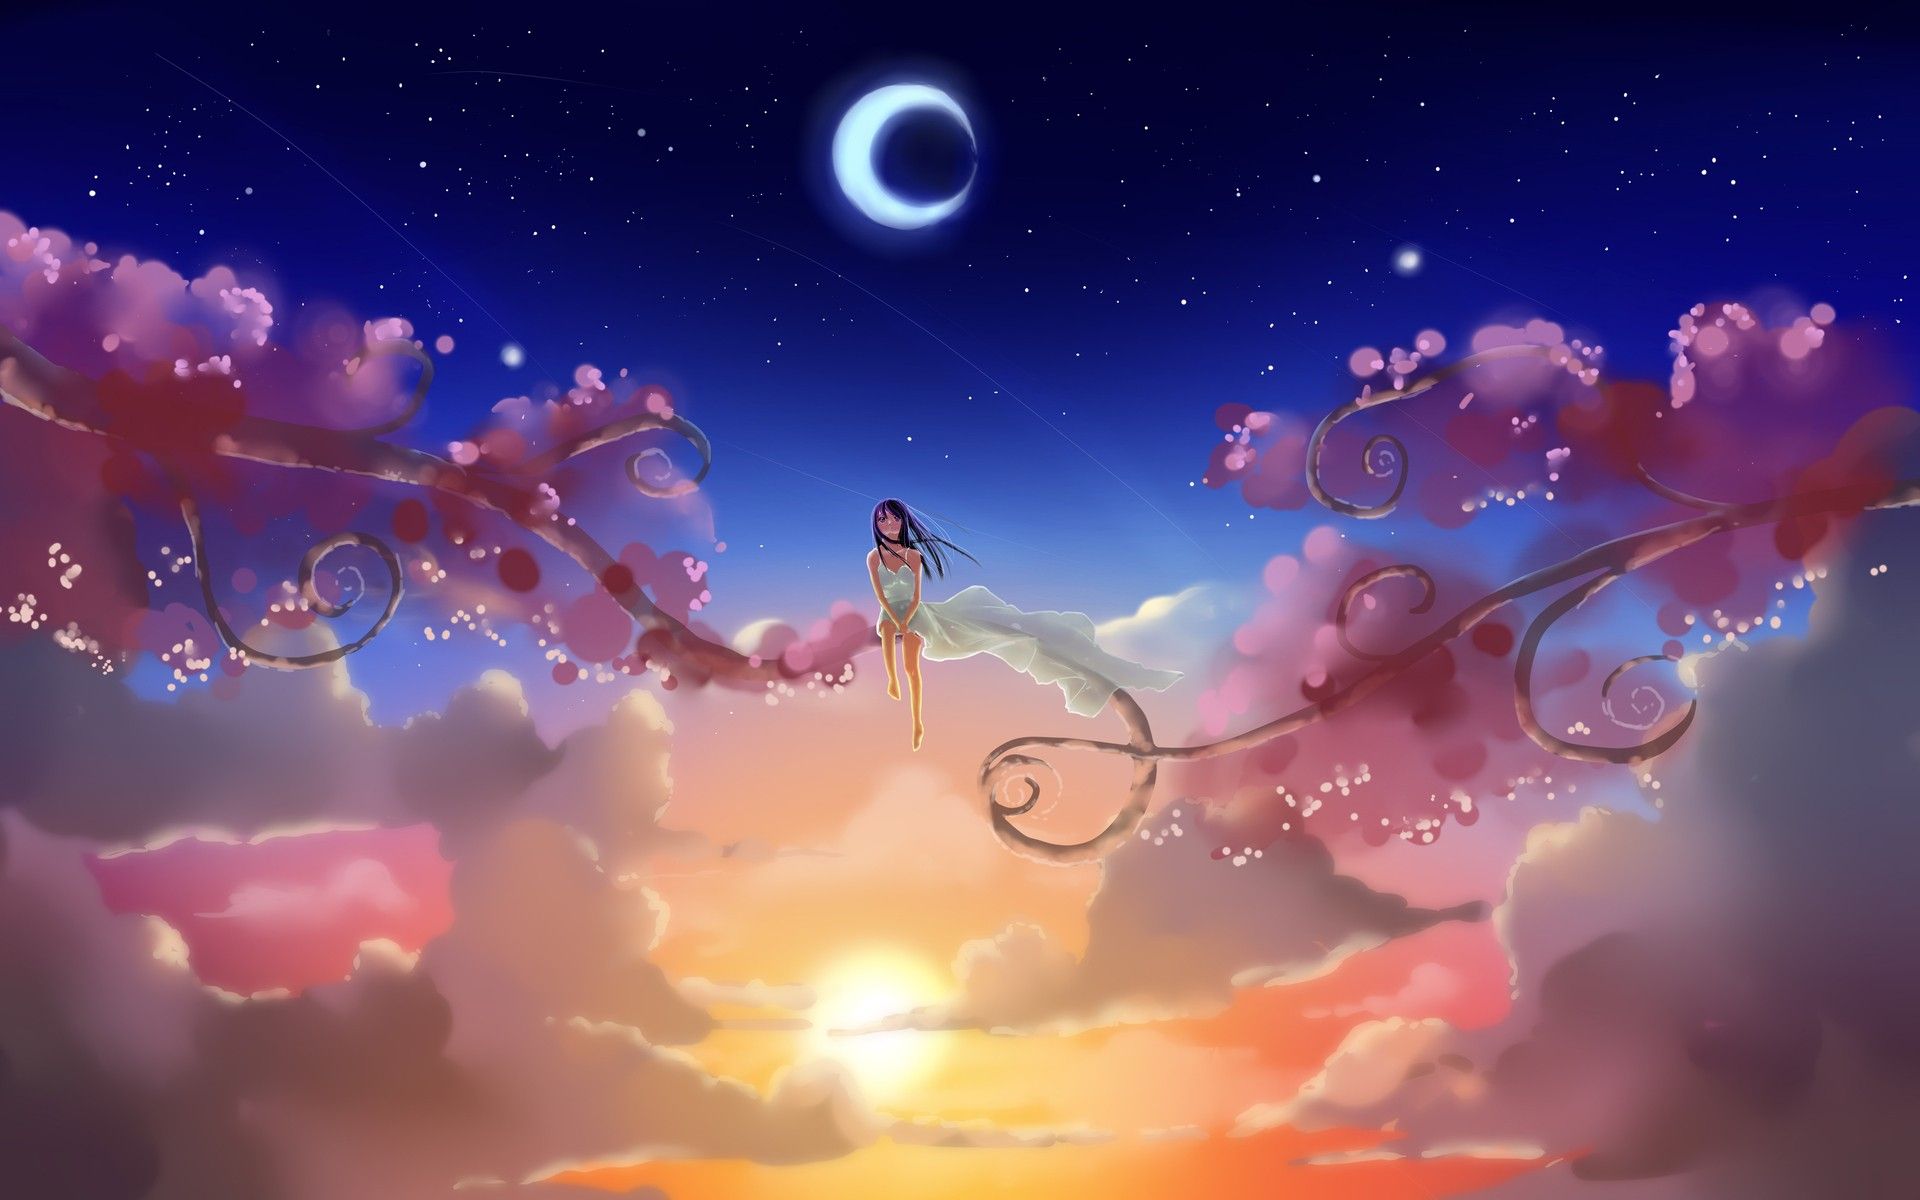 Dream Anime Wallpaper. Anime Wallpaper, Beautiful Anime Wallpaper and Awesome Anime Wallpaper